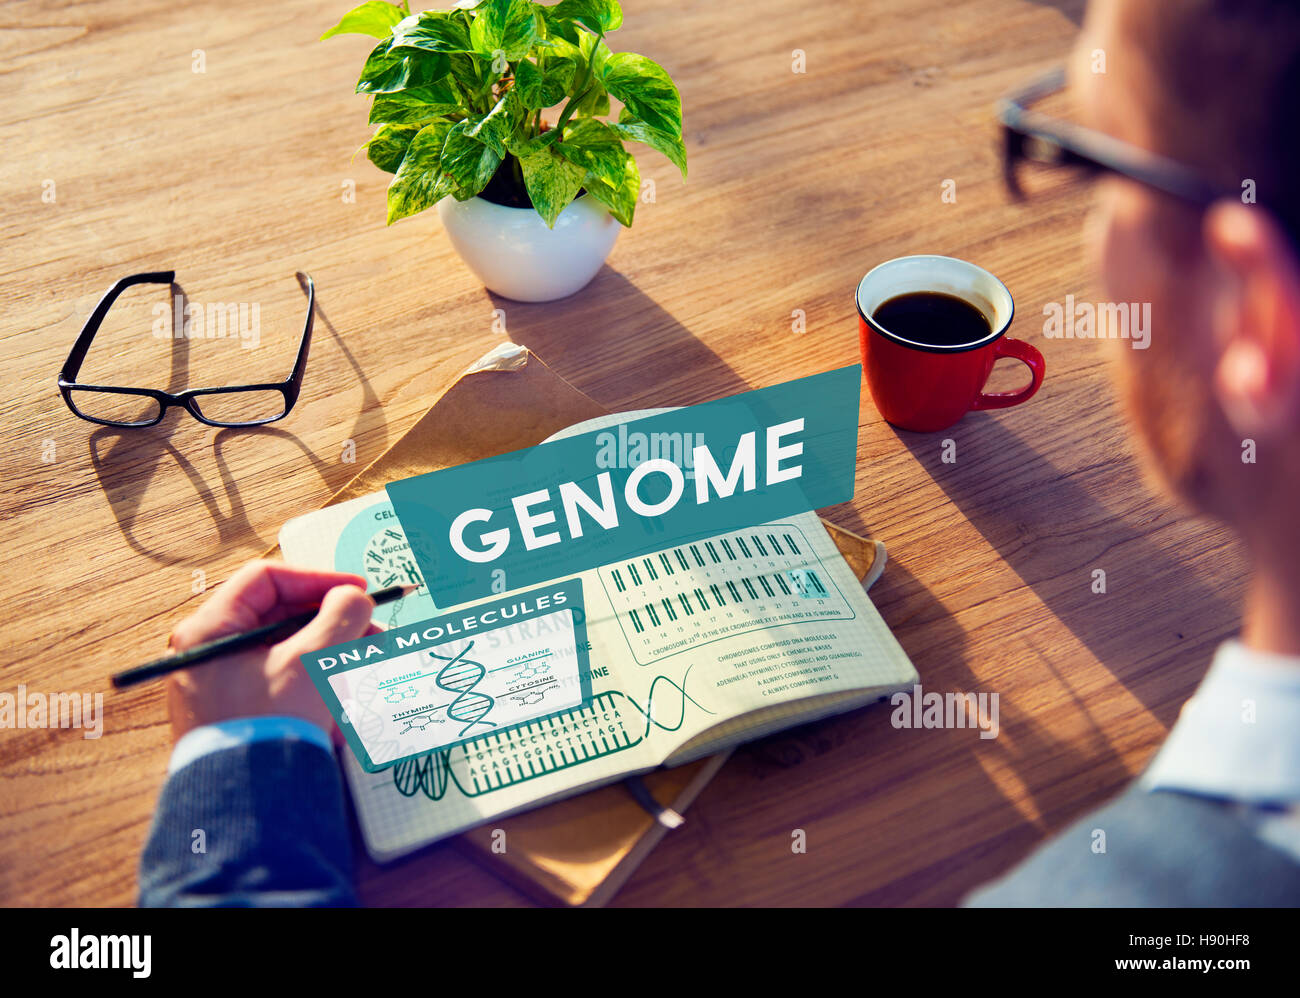 Genom-Biologie DNA Identität Stem Zellkonzept Codierung Stockfoto